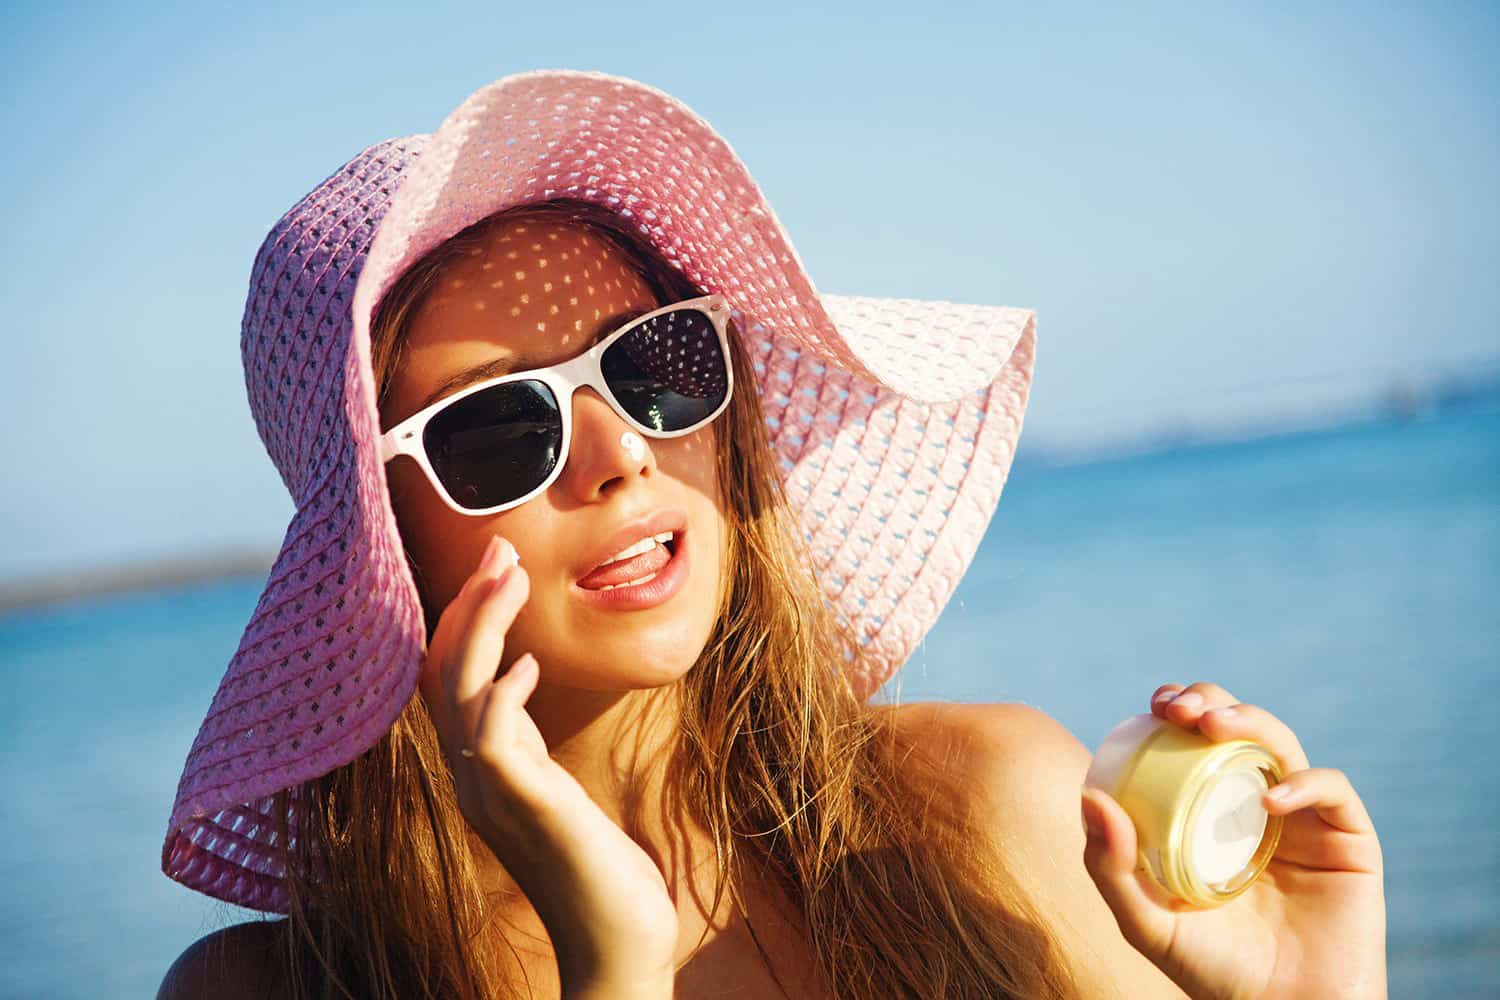 Halmhatt för kvinnor beach outfit idéer solglasögon modetrender solskydd hudvård